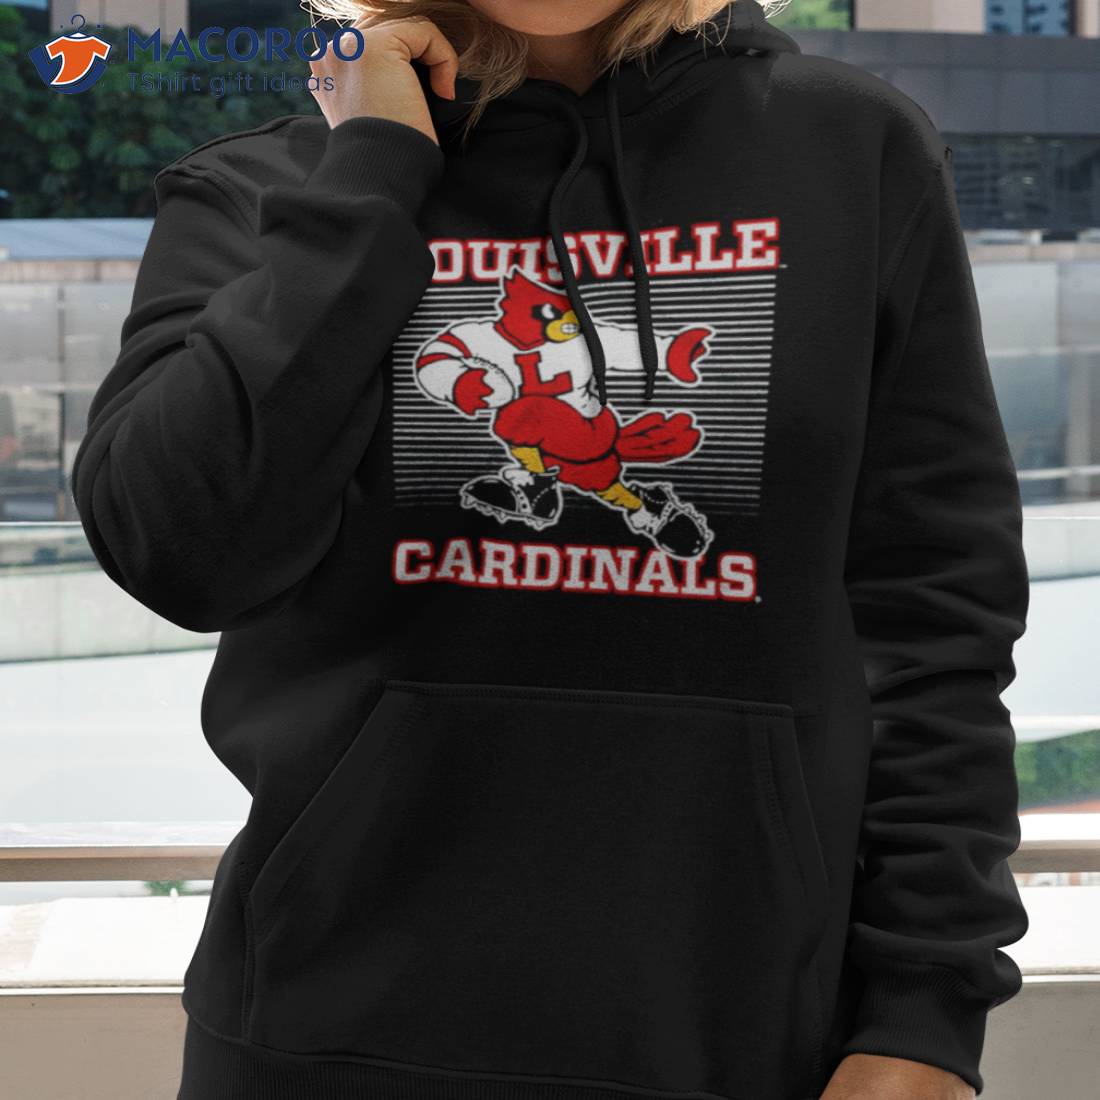 Louisville Cardinals Heisman T-Shirt New XL